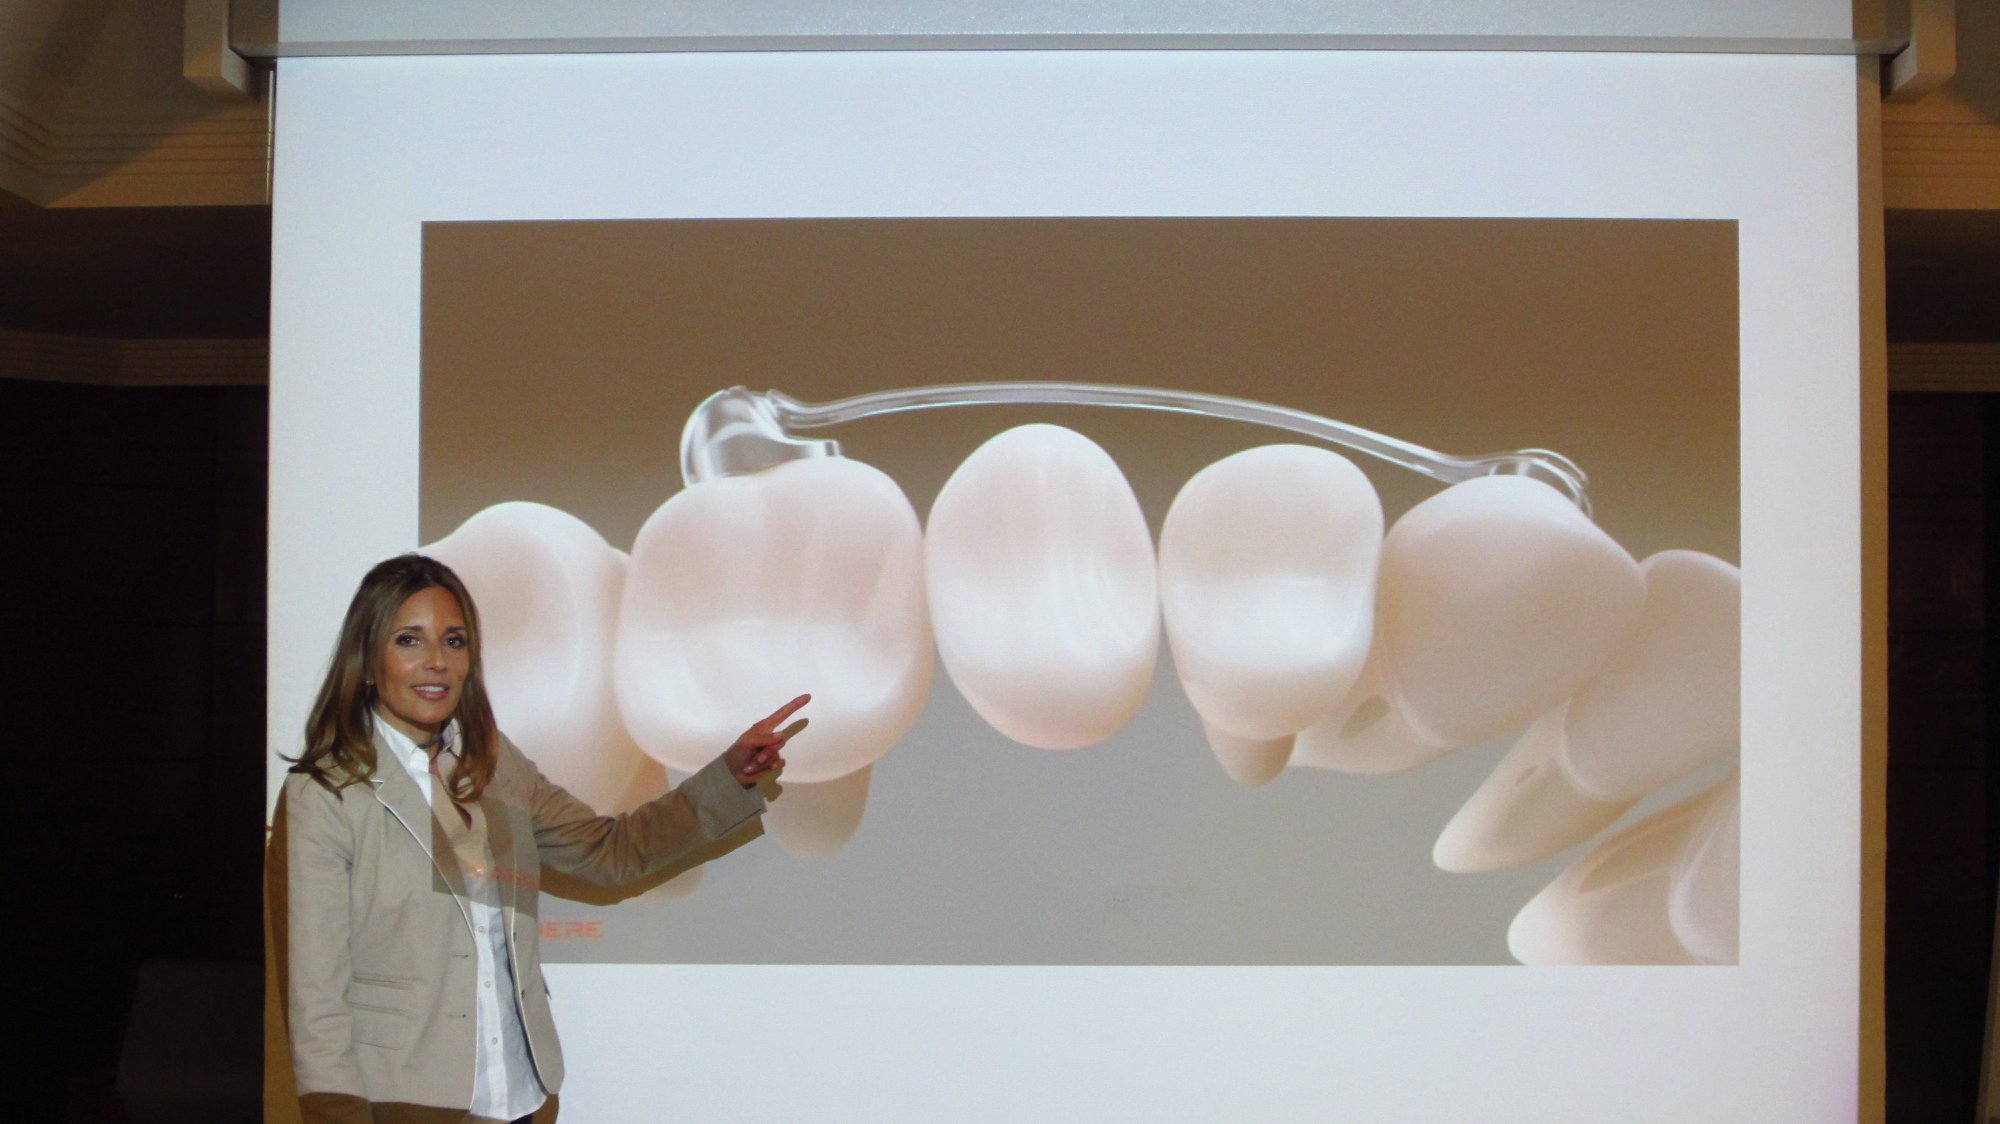 La Dra. Ana María Cantor de Odontokids presentó la sesión clínica de 'Simplificación del tratamiento ortodóncico en clase II y clase III' con el dispositivo Motion en el Colegio de Dentistas de Málaga. (Abril de 2018)